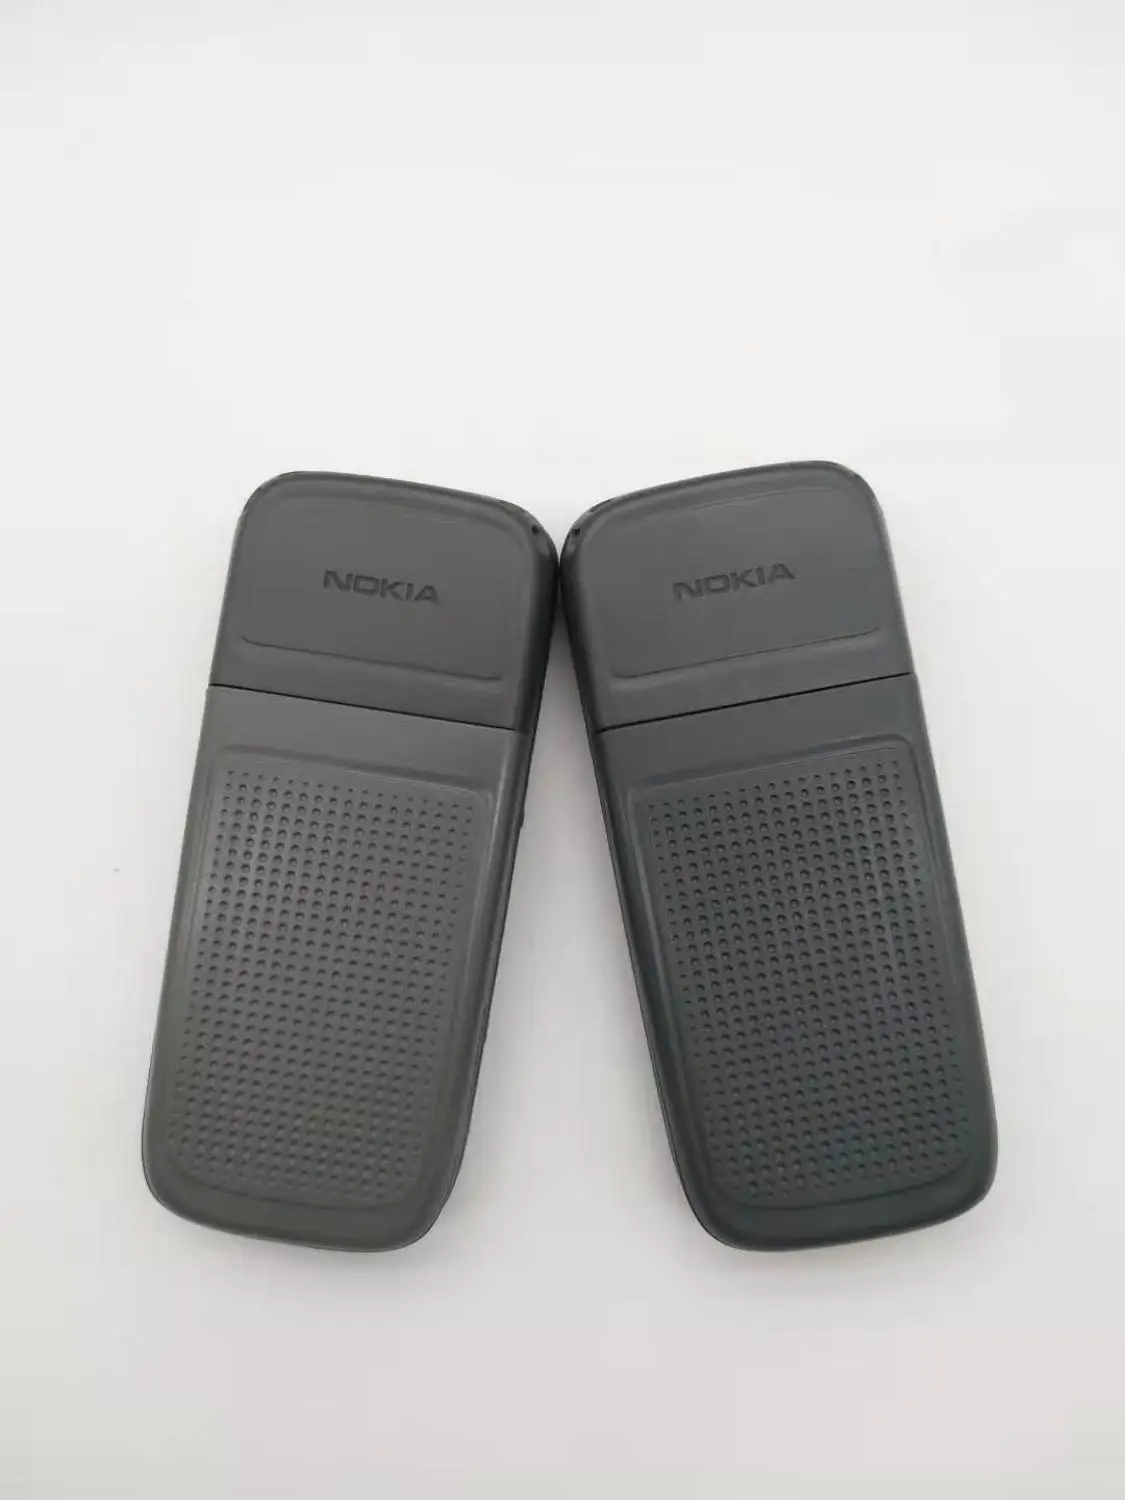 Original Nokia 1200 deblocat gsm 900/1800 telefon mobil cu rusă, EBRAICĂ, poloneză limba Renovat transport gratuit